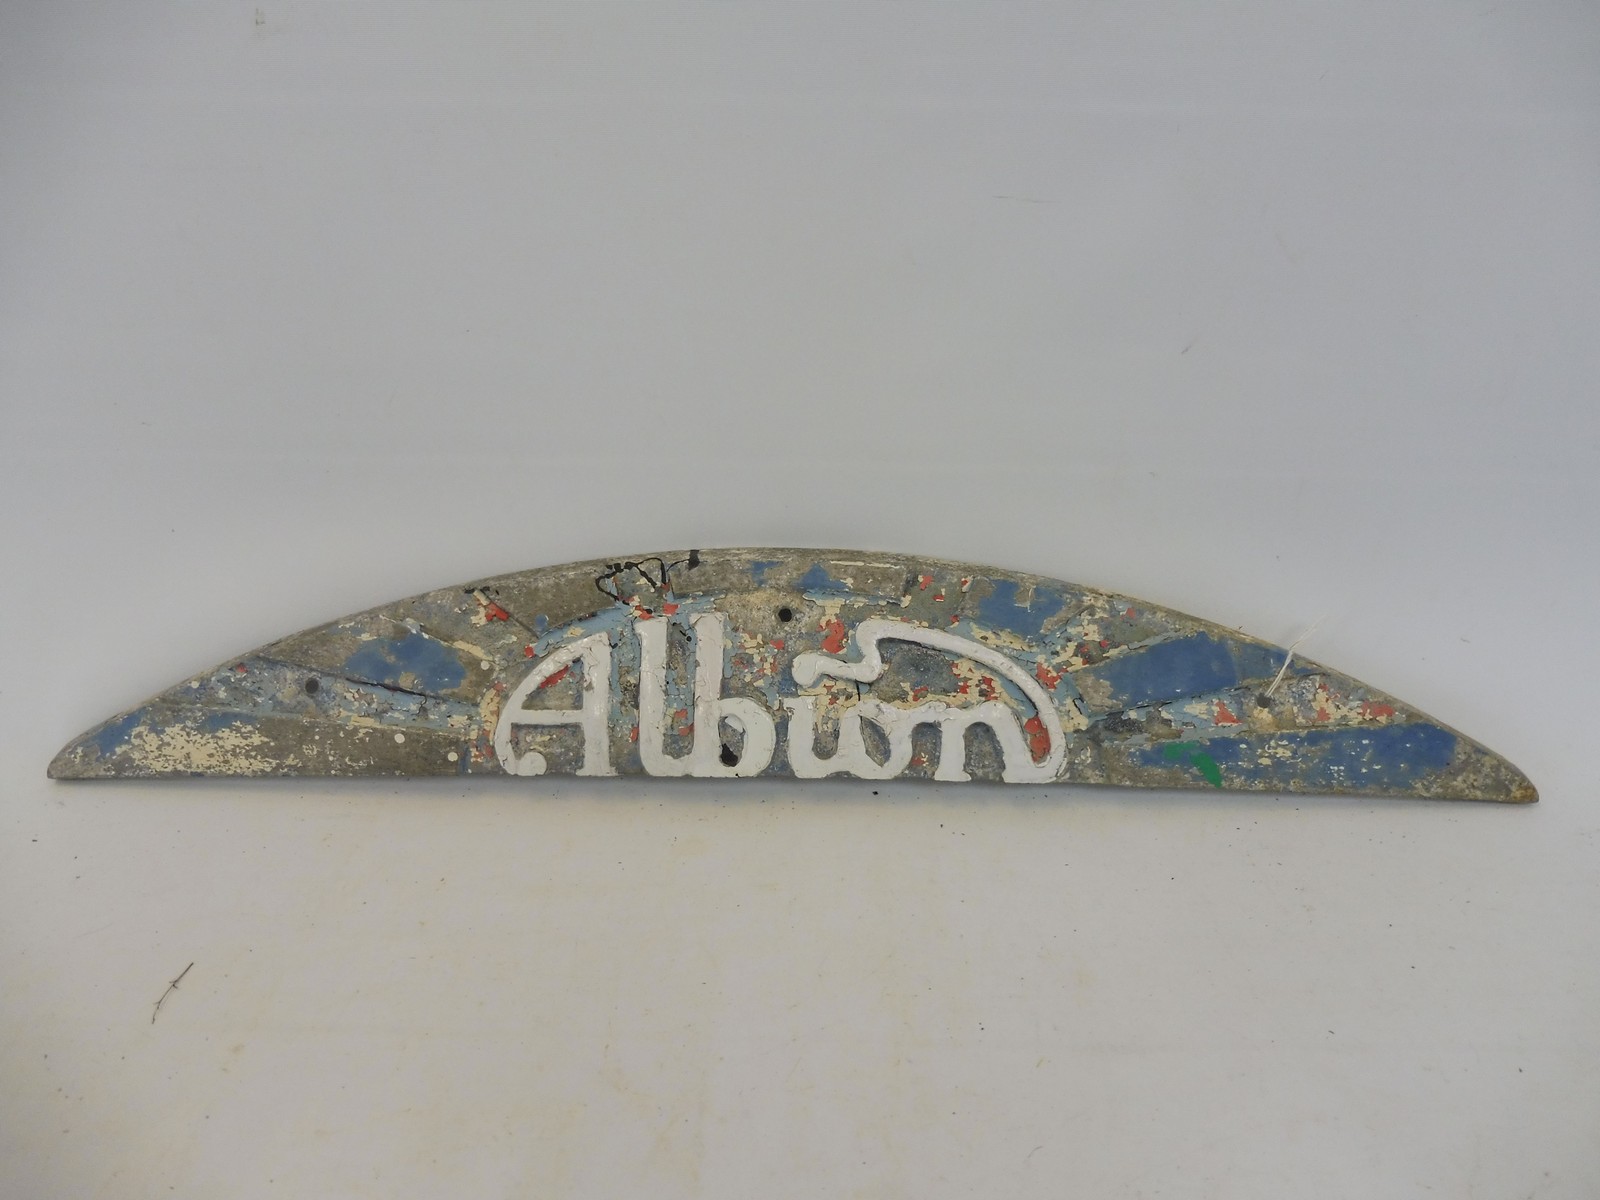 An Albion aluminium radiator plaque, 24" long.